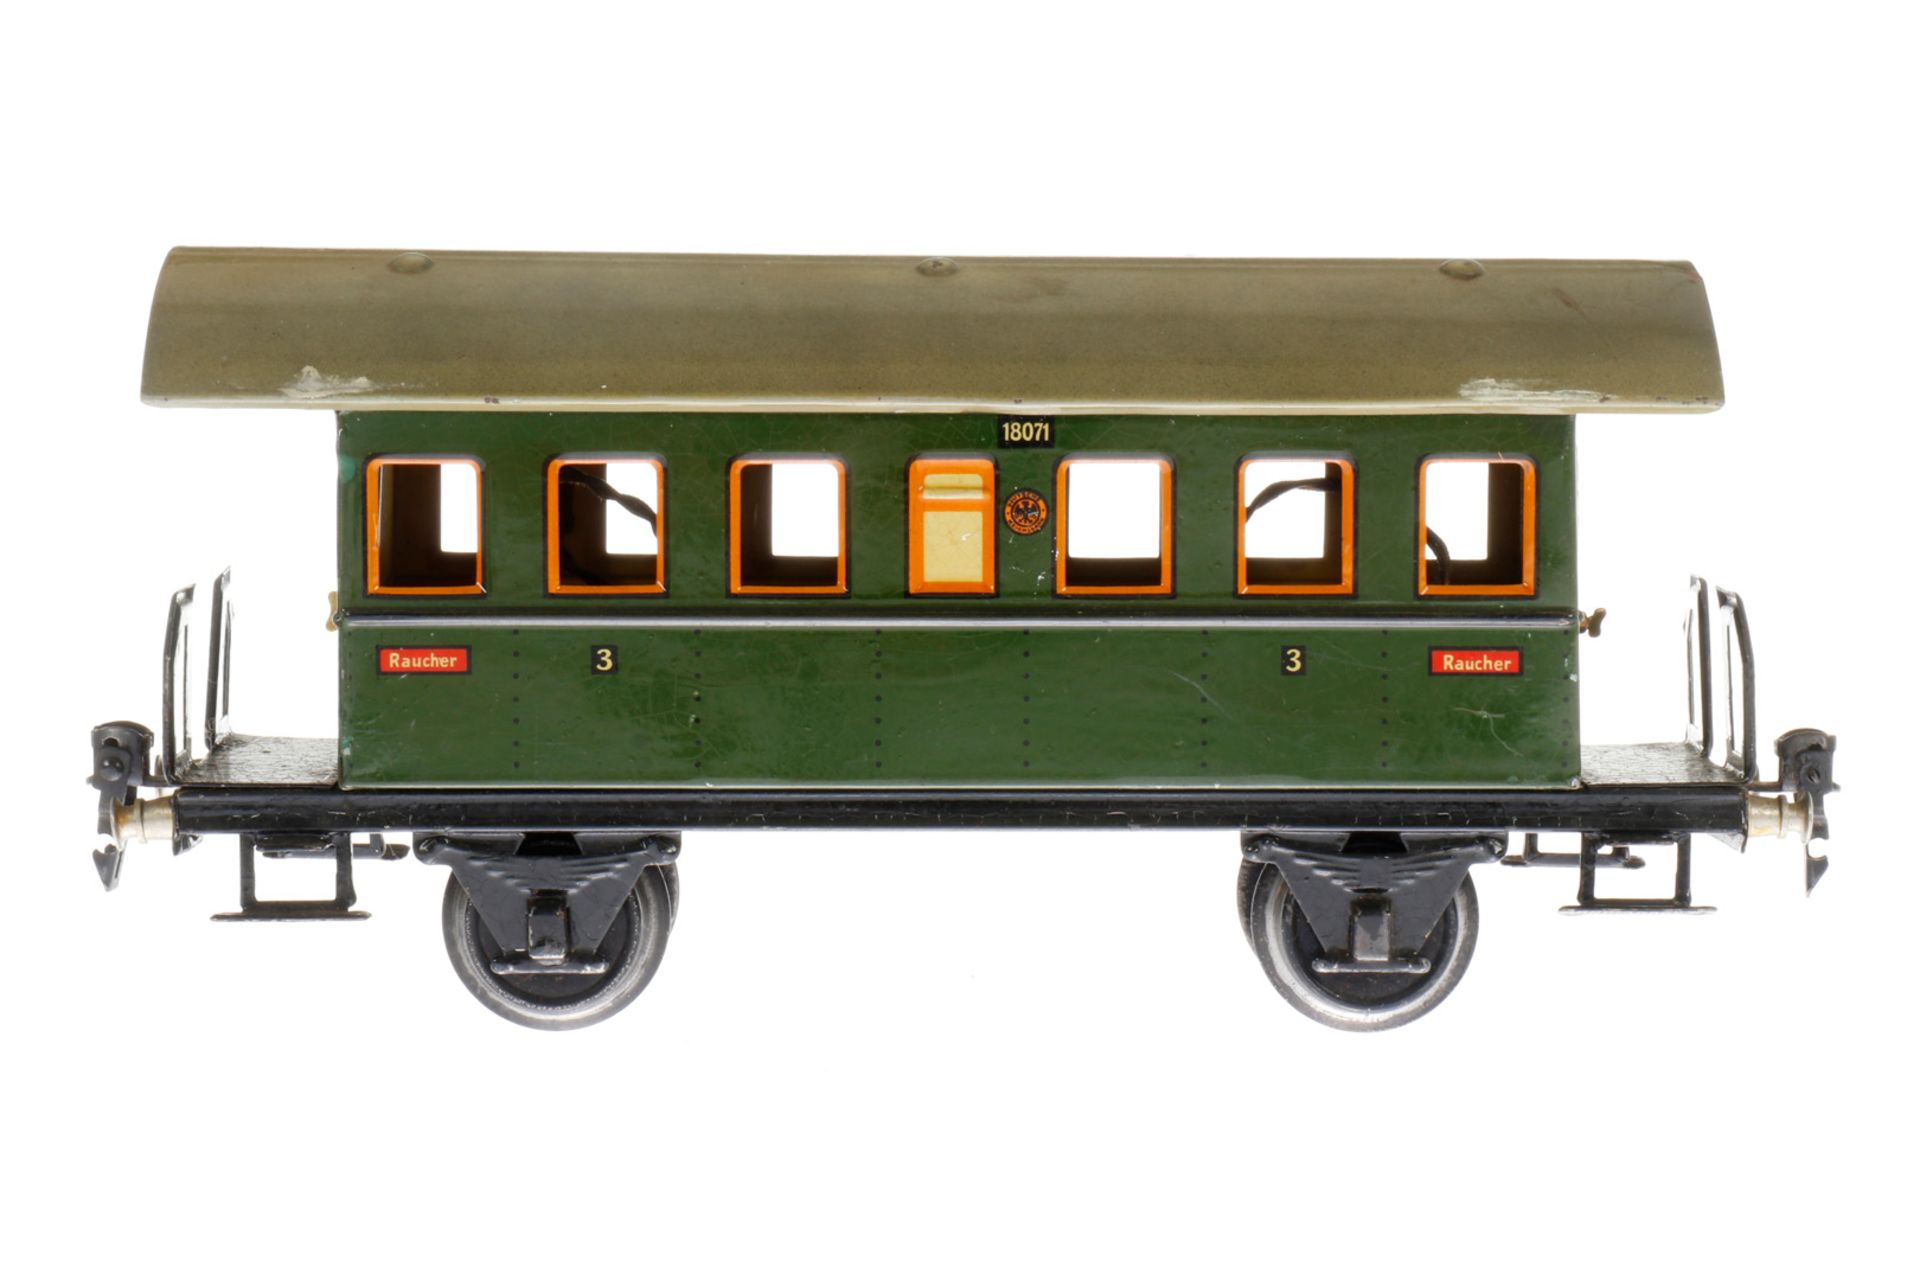 Märklin Personenwagen 1807, S 1, CL, mit 2 AT und Innenbeleuchtung, LS und gealterter Lack, L 27,